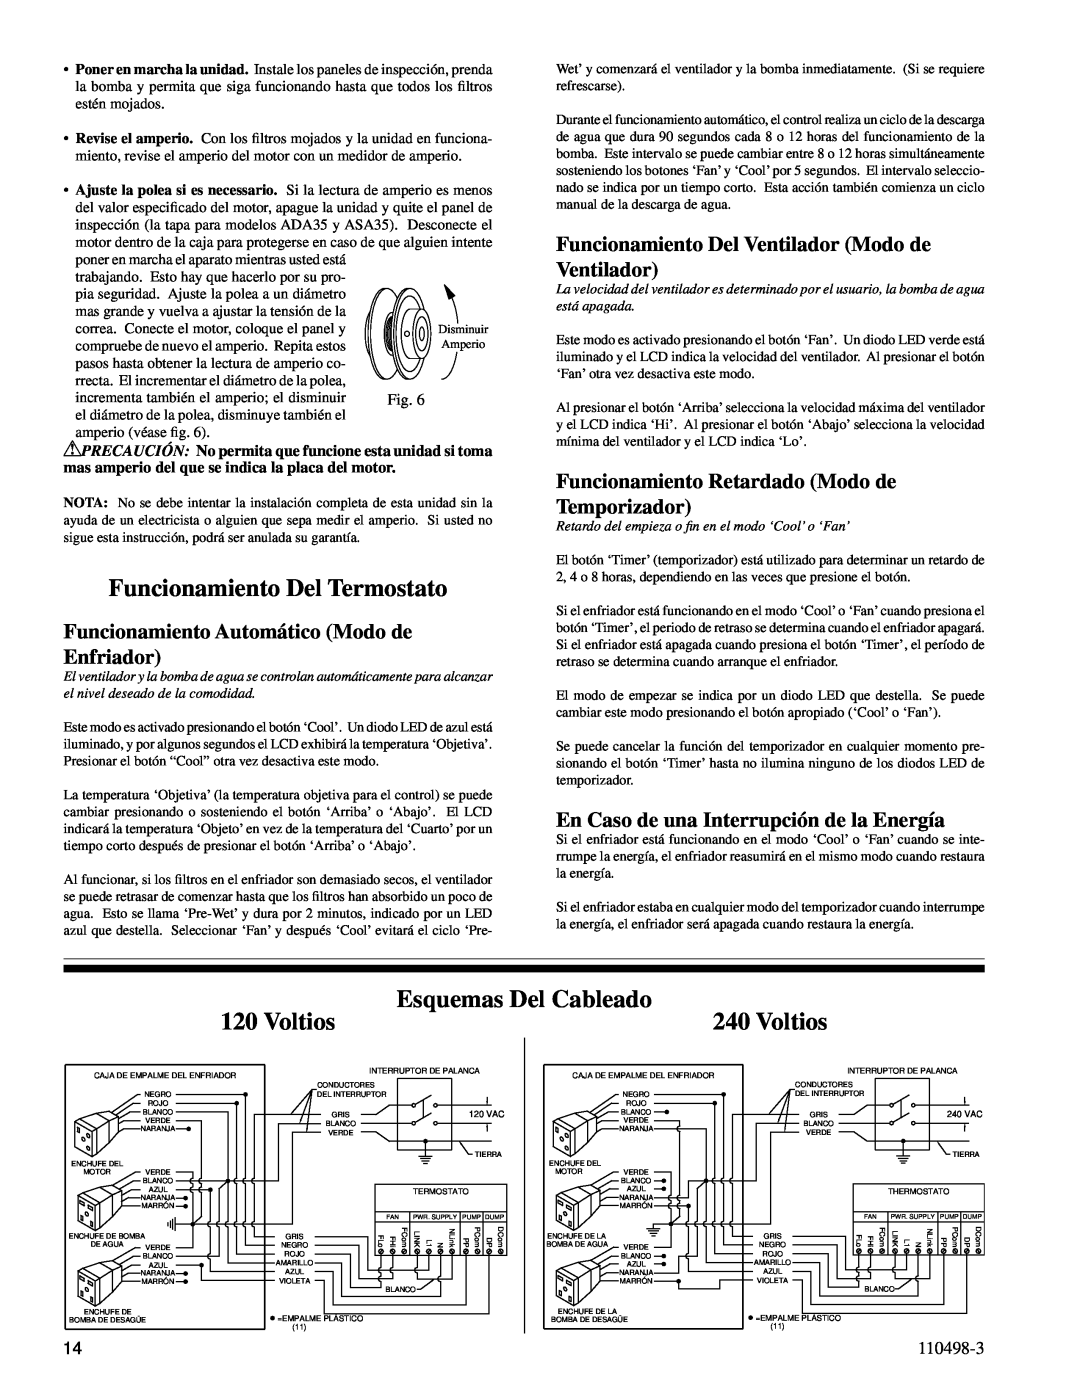 Essick Air AD1C71 Funcionamiento Del Termostato, Voltios, Esquemas Del Cableado, En Caso de una Interrupción de la Energía 